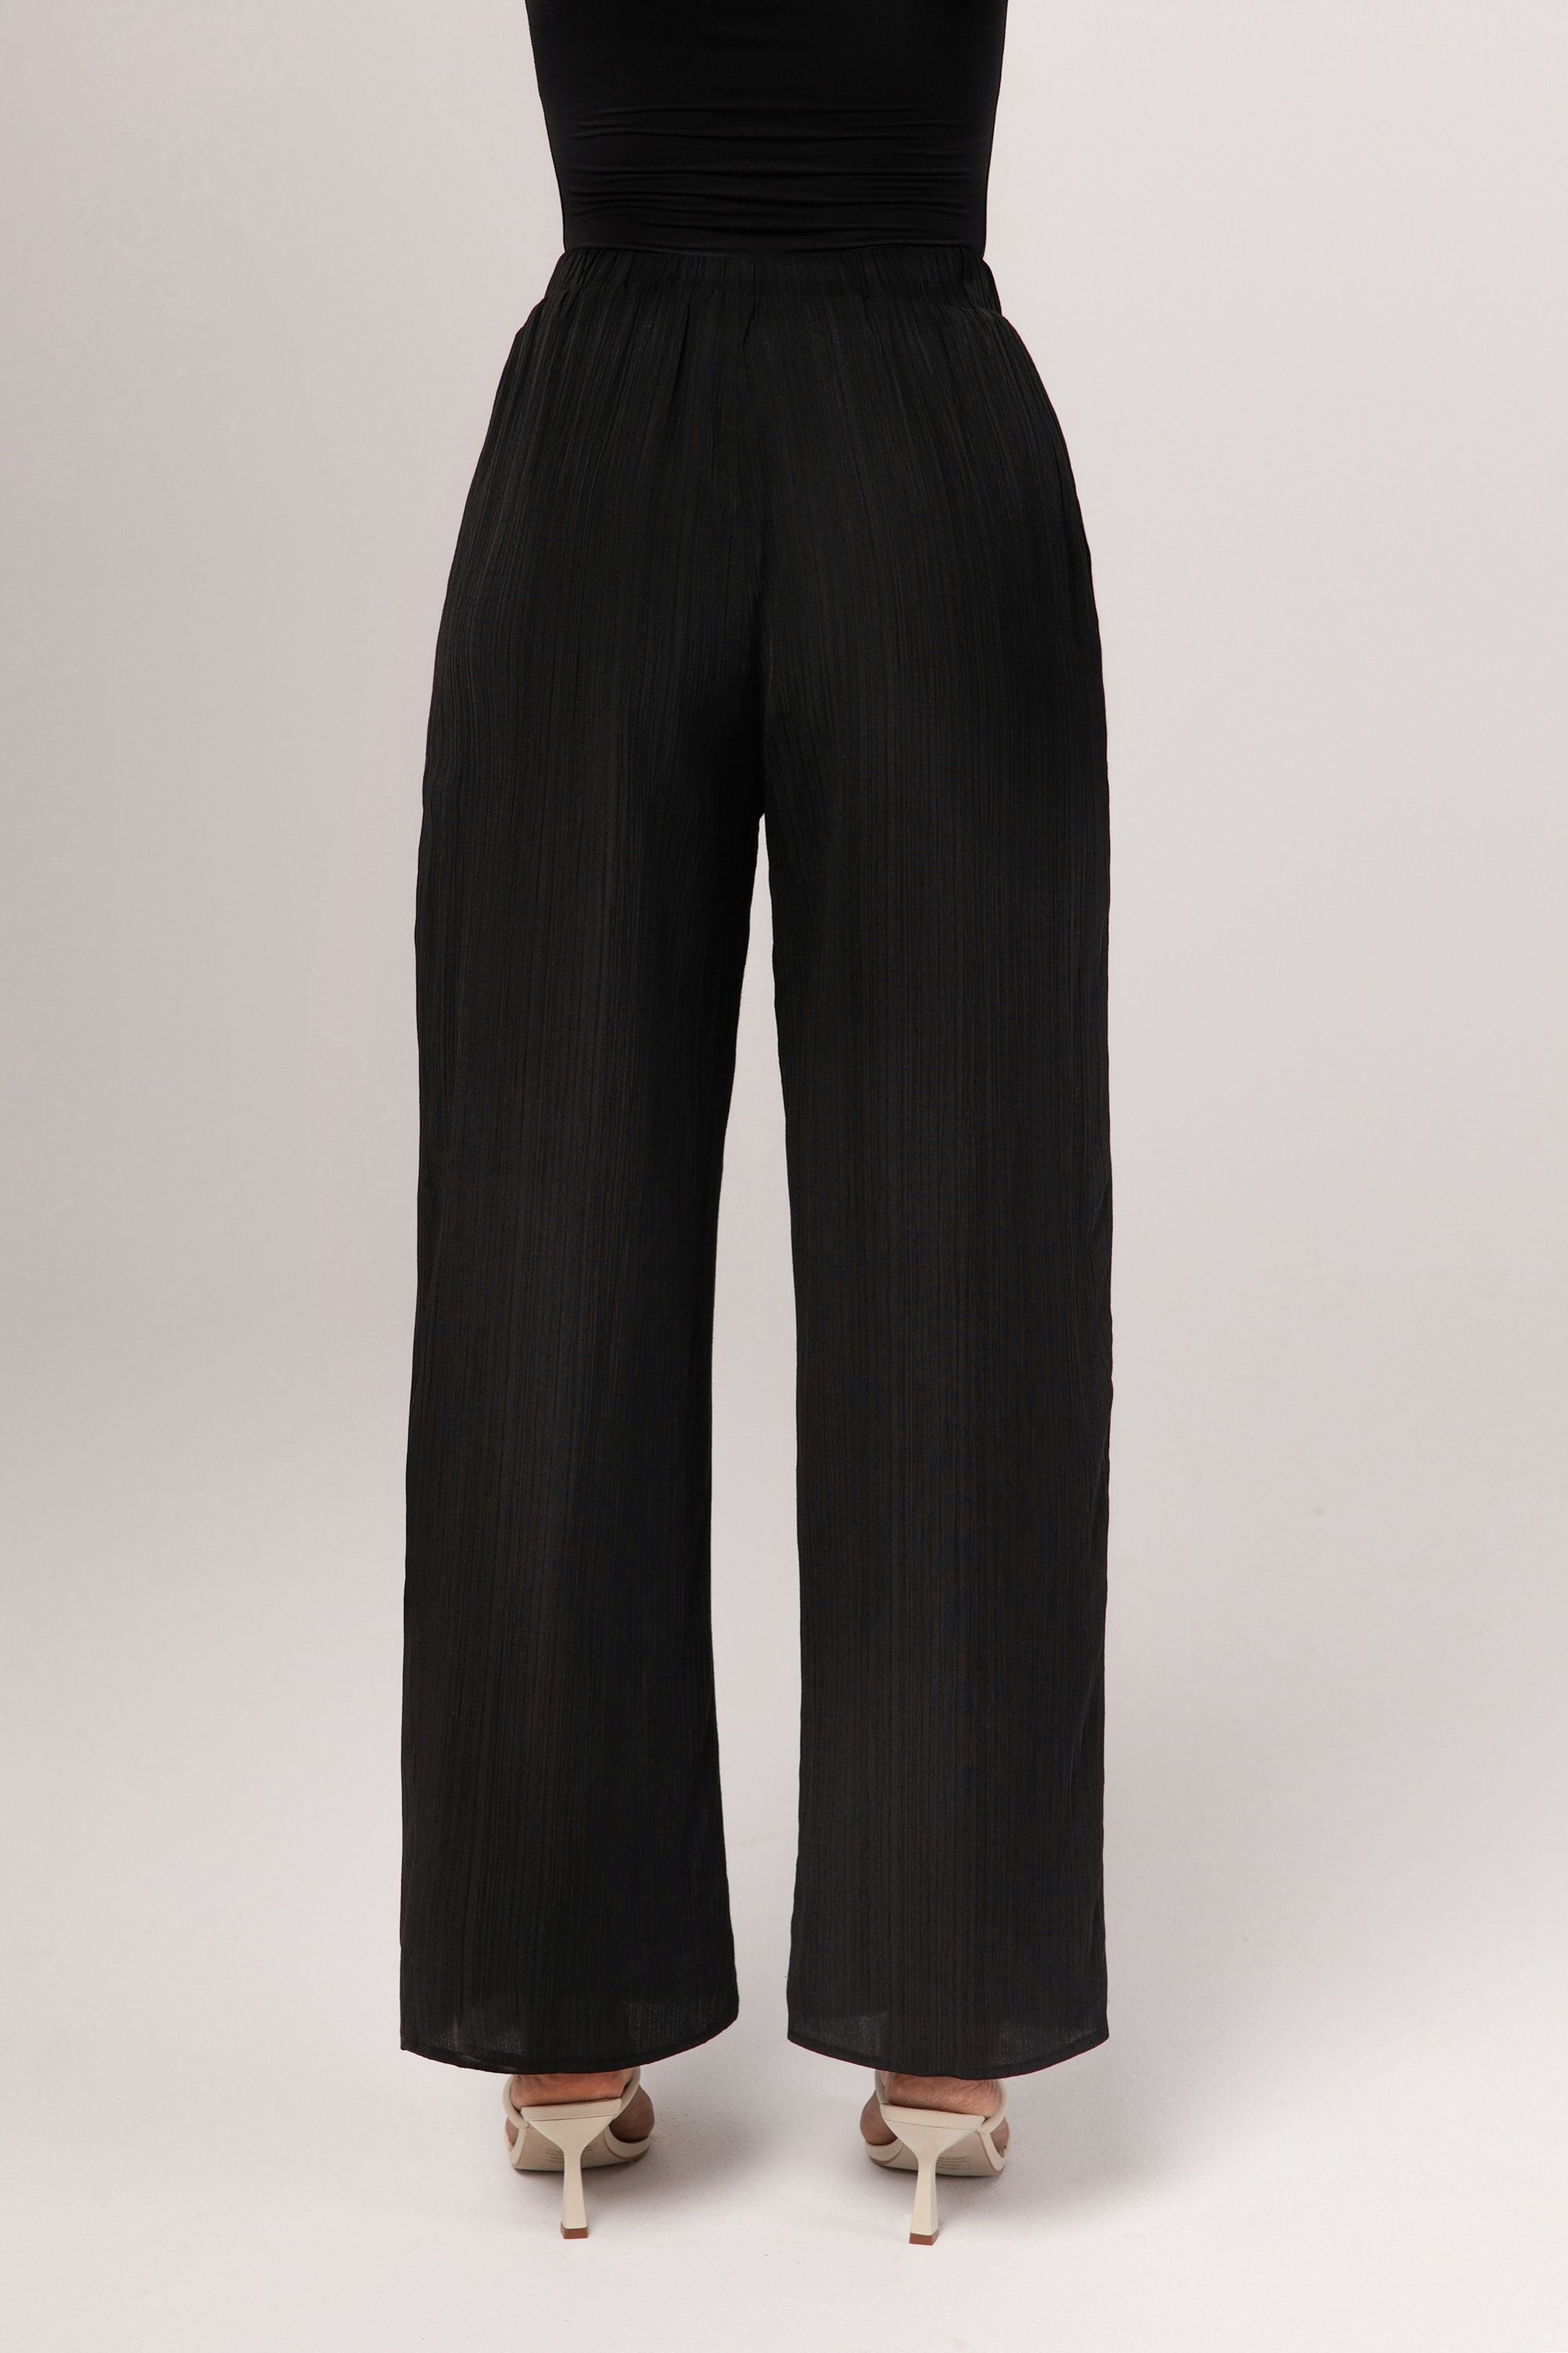 Nashwa Textured Rayon Wide Leg Pants - Black Veiled 